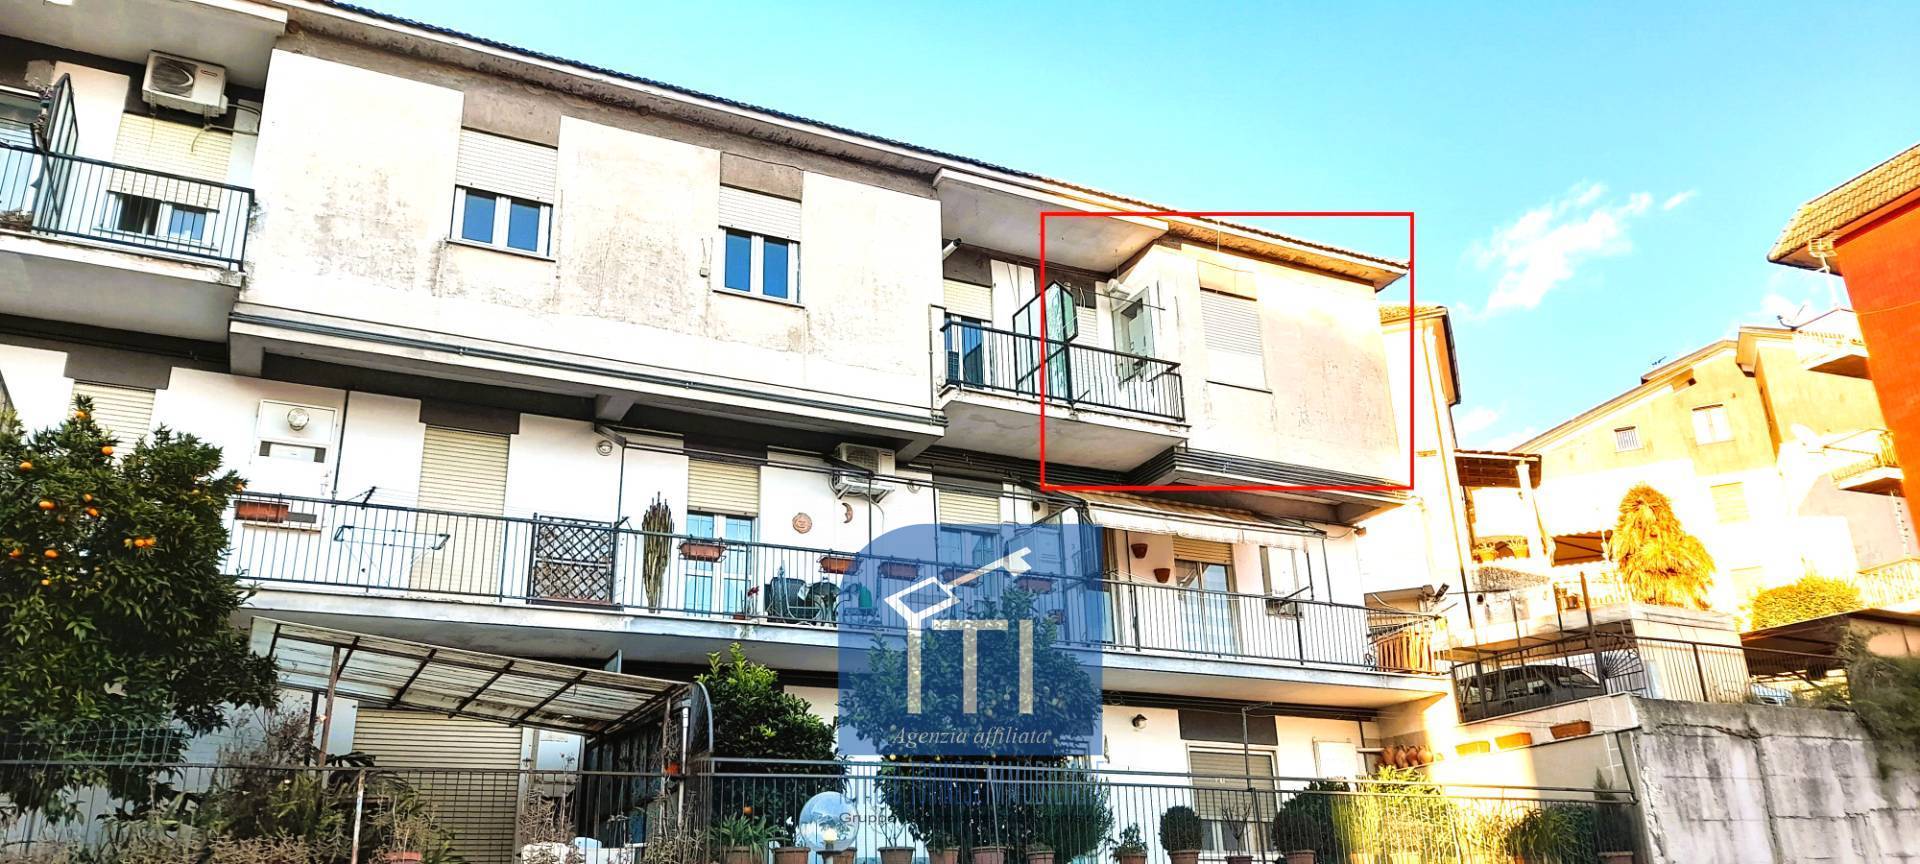 Appartamento in vendita a Sant'Elia Fiumerapido, 6 locali, prezzo € 69.000 | PortaleAgenzieImmobiliari.it